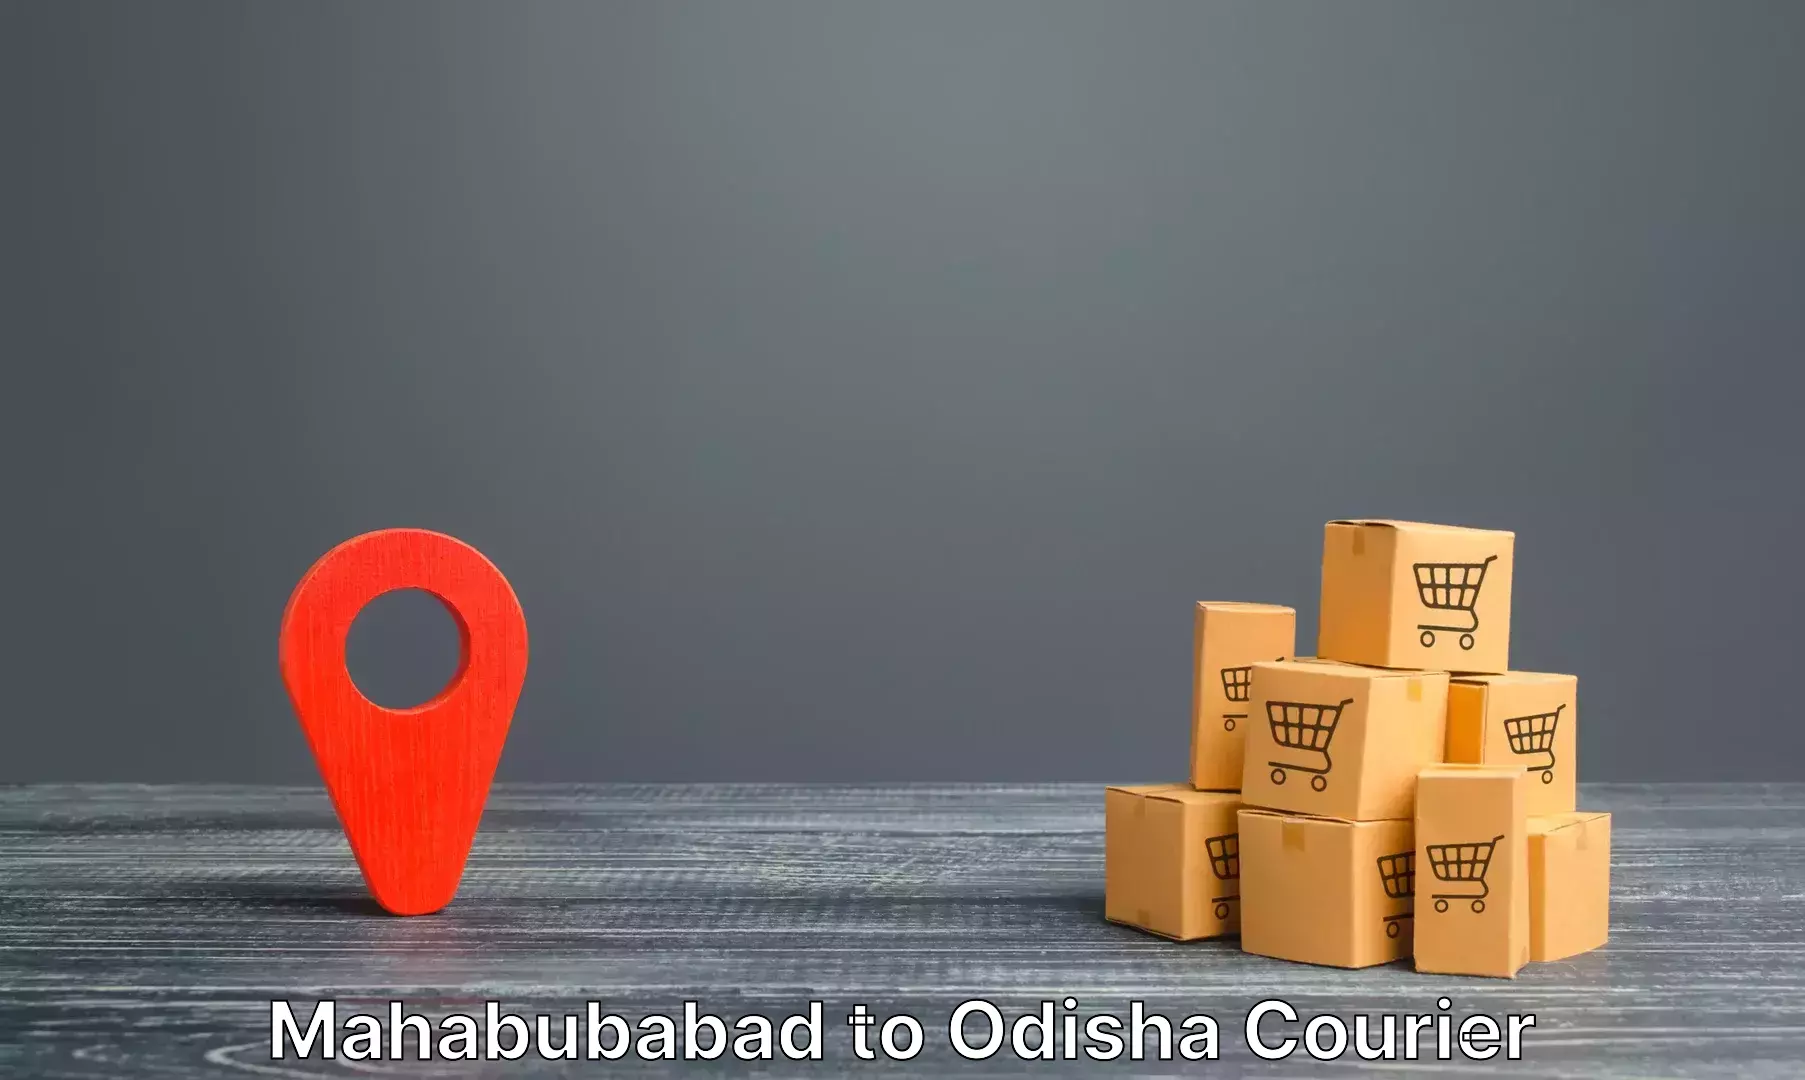 Luggage transport service Mahabubabad to Jashipur